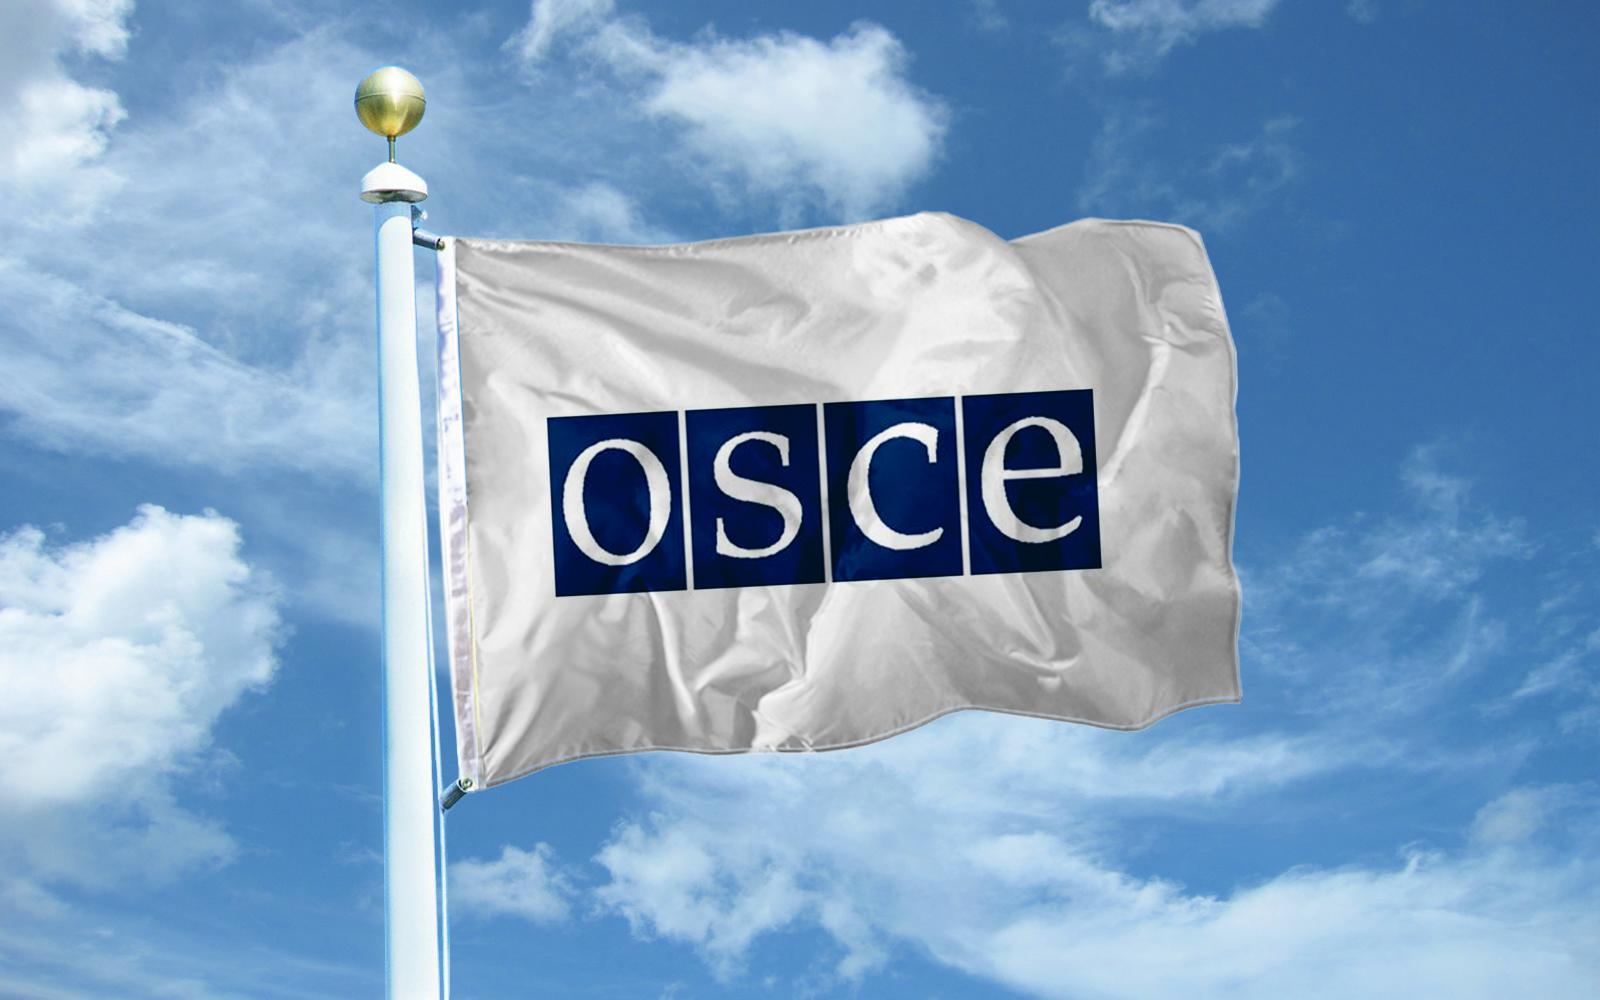 ОБСЕ проведет в среду мониторинг на линии соприкосновения войск Азербайджана и Армении